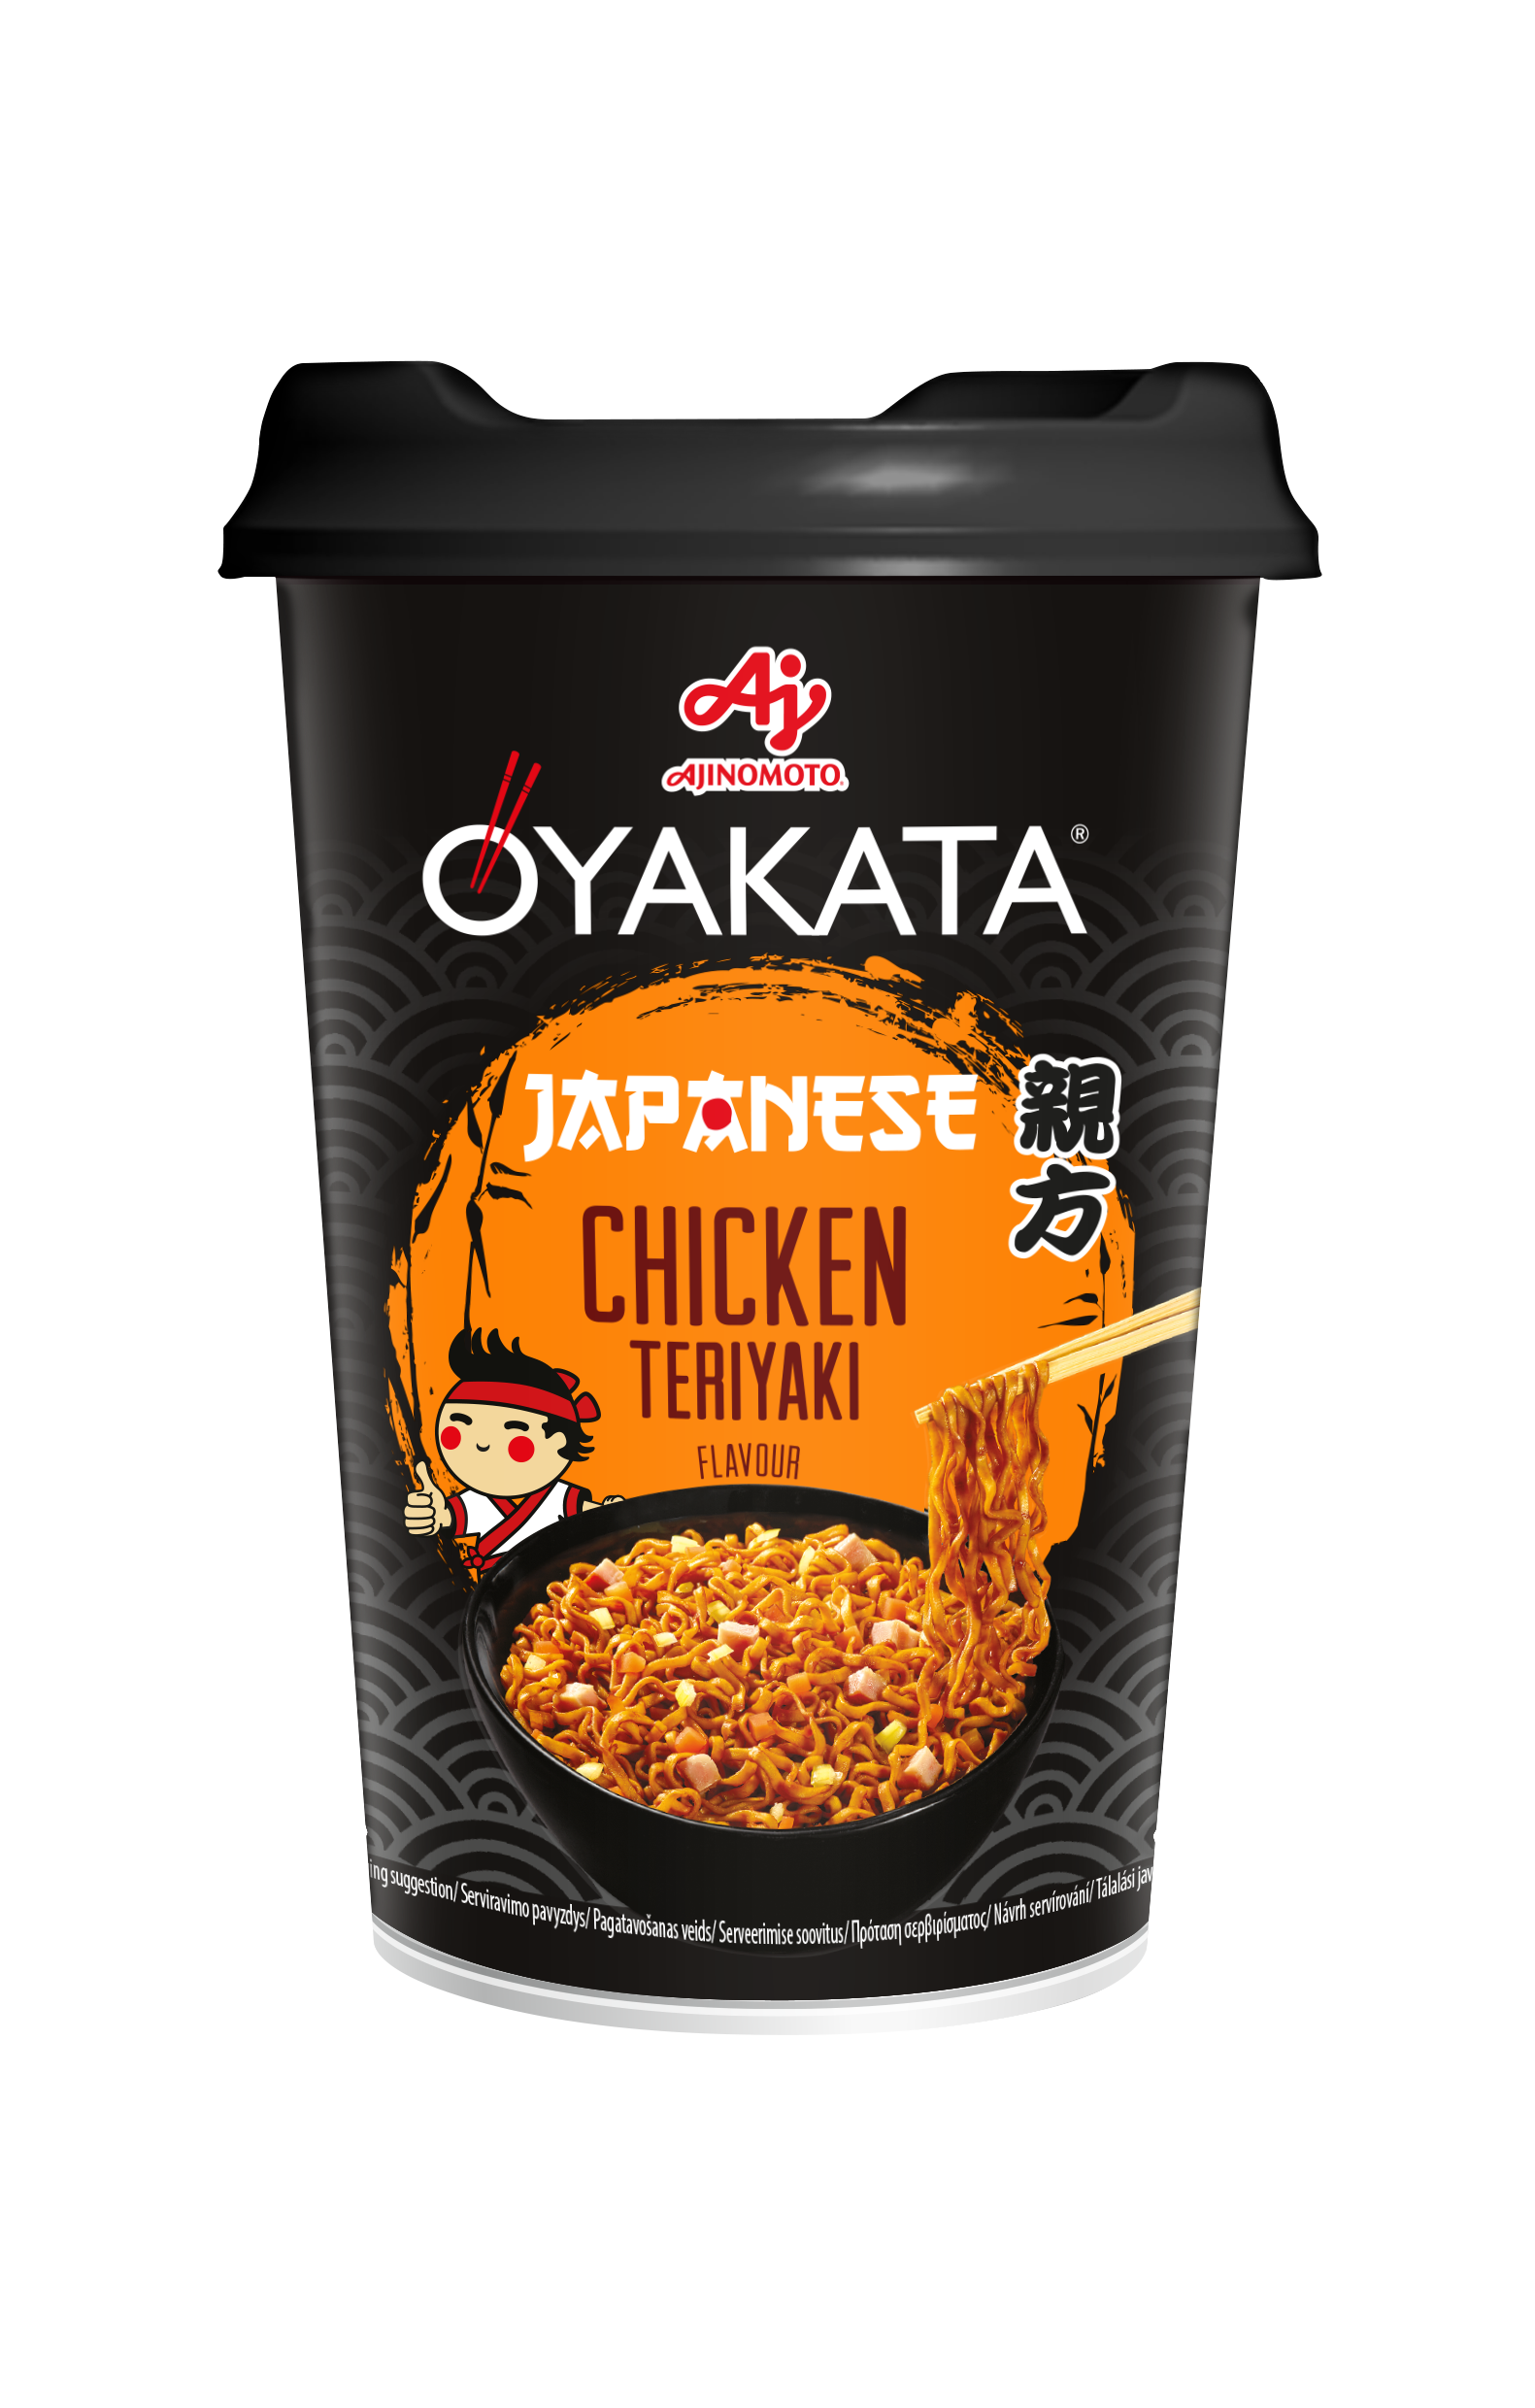 OYAKATA Yakisoba Japanese Chicken Teriyaki 96g